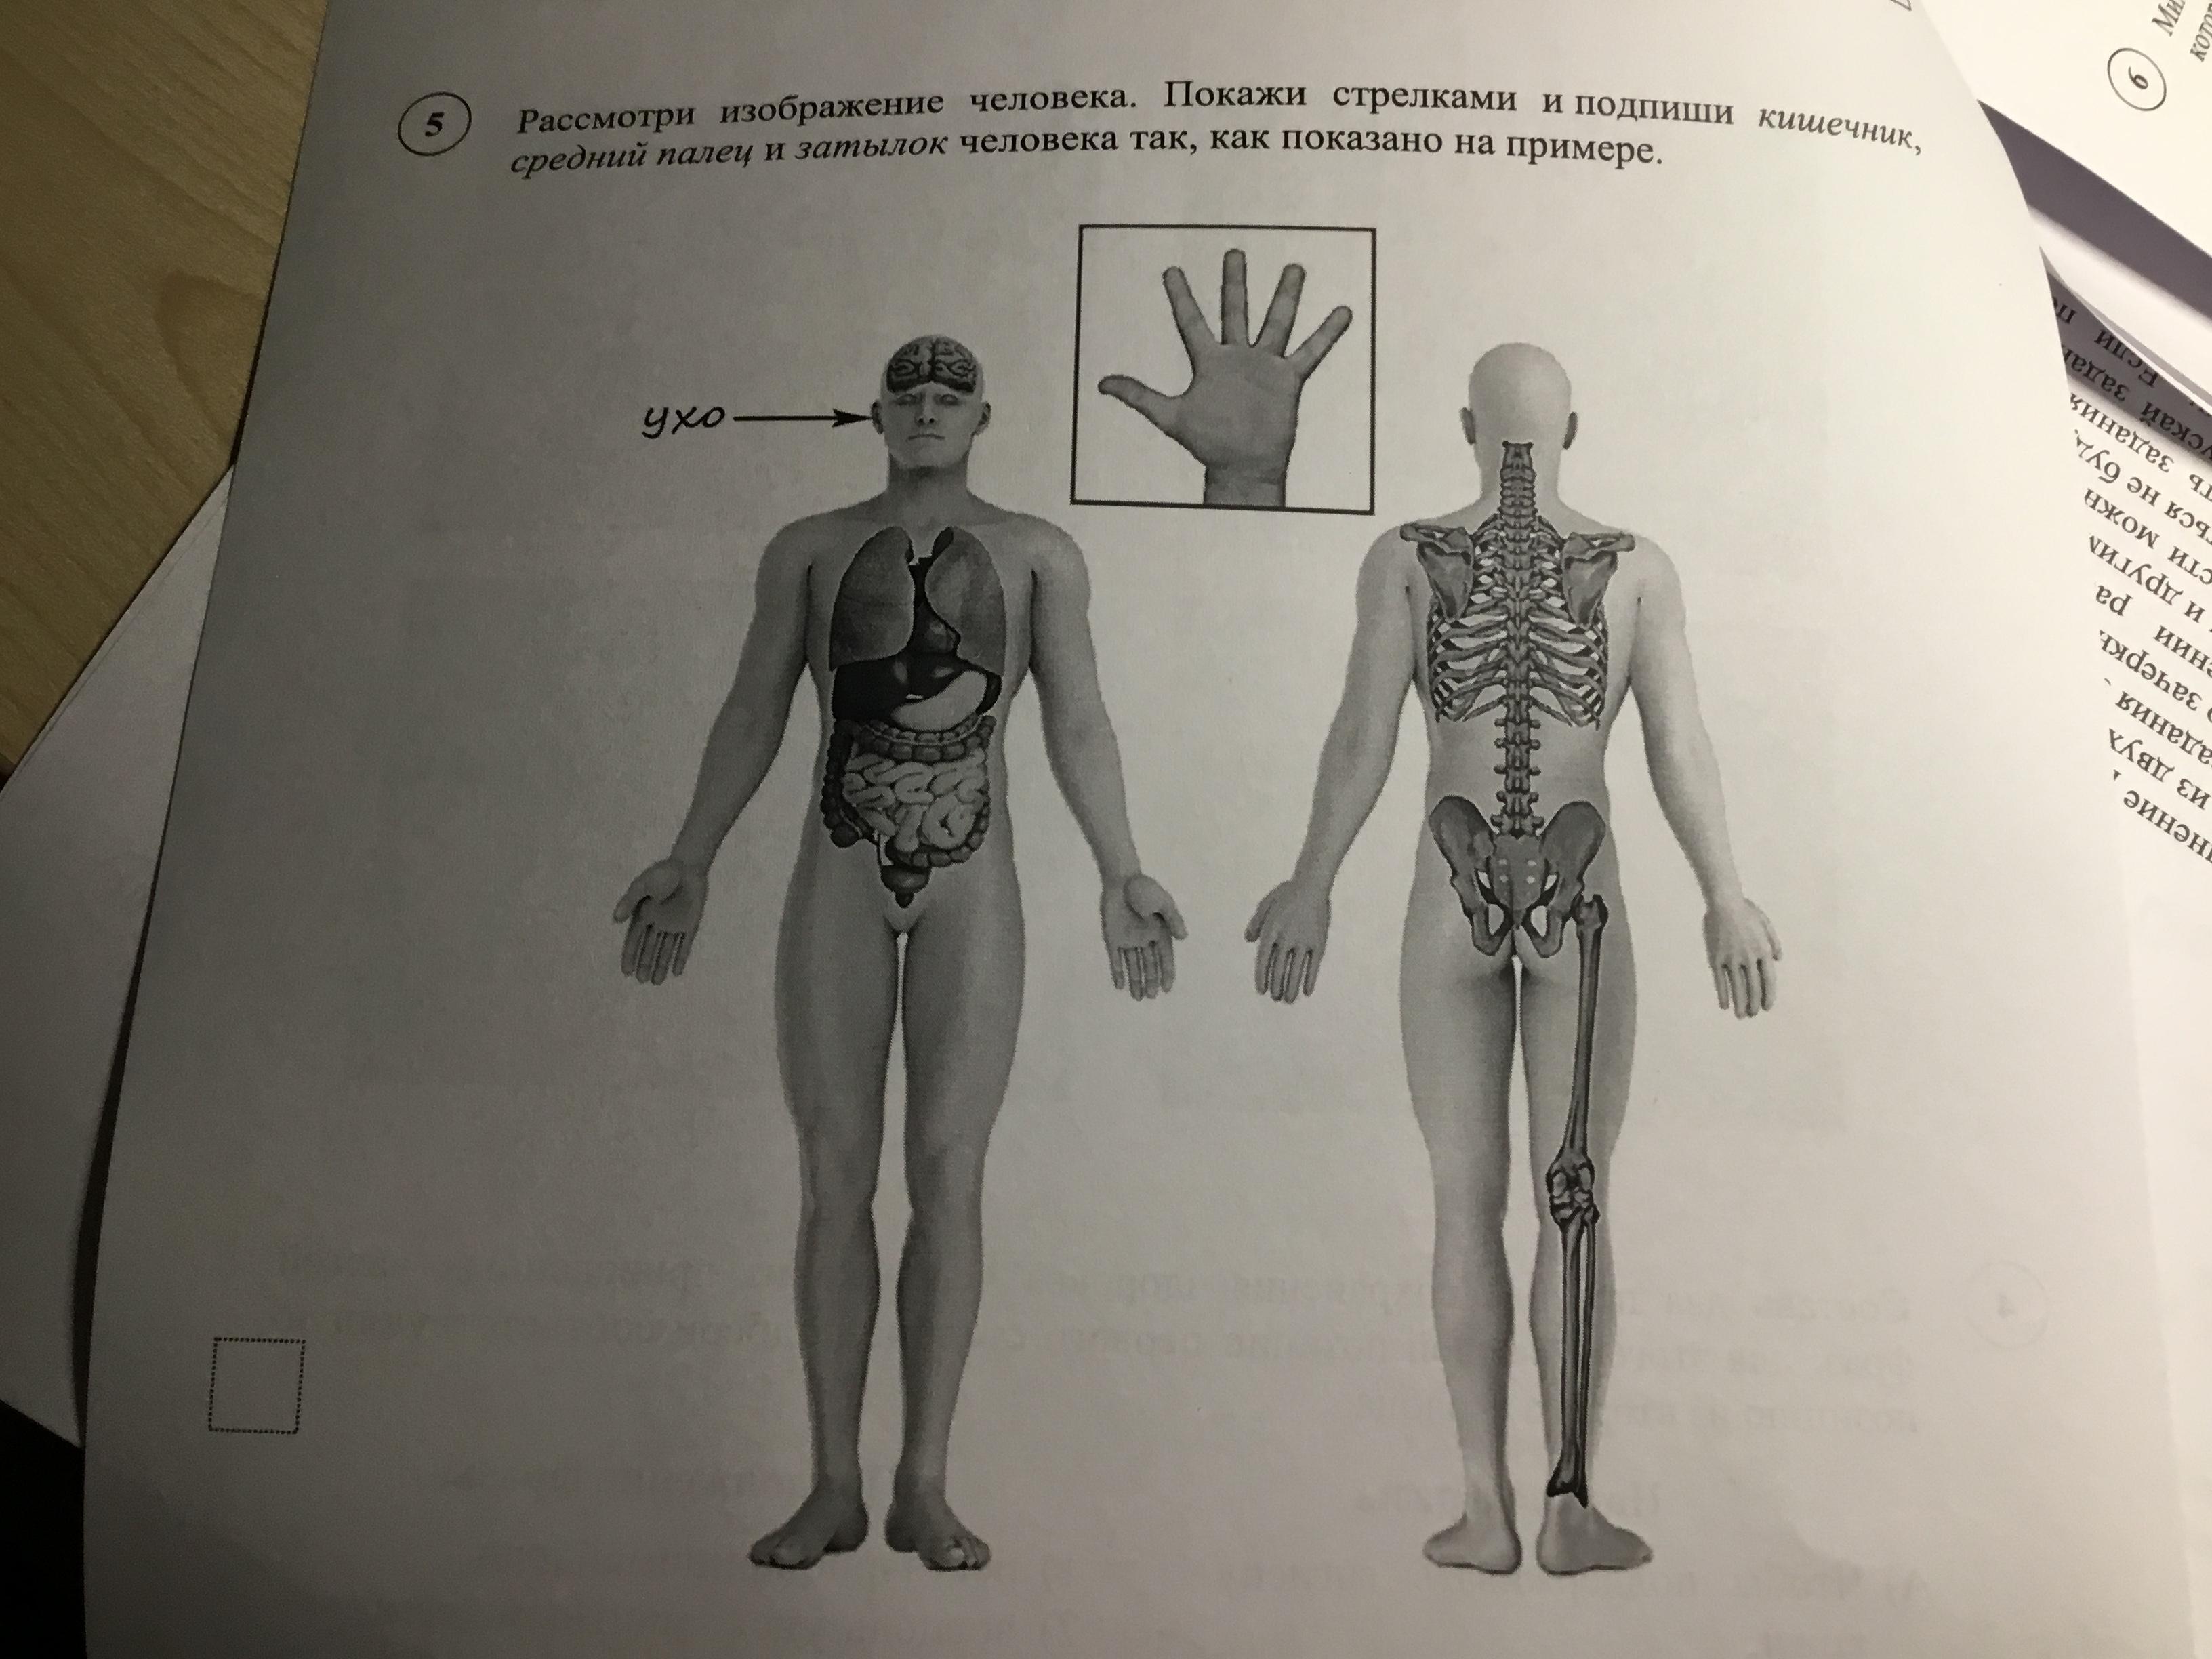 Впр 8 класс анатомия человека. Части тела ВПР. Изображение человека ВПР. Строение человека ВПР. Рассмотри изображение человека.